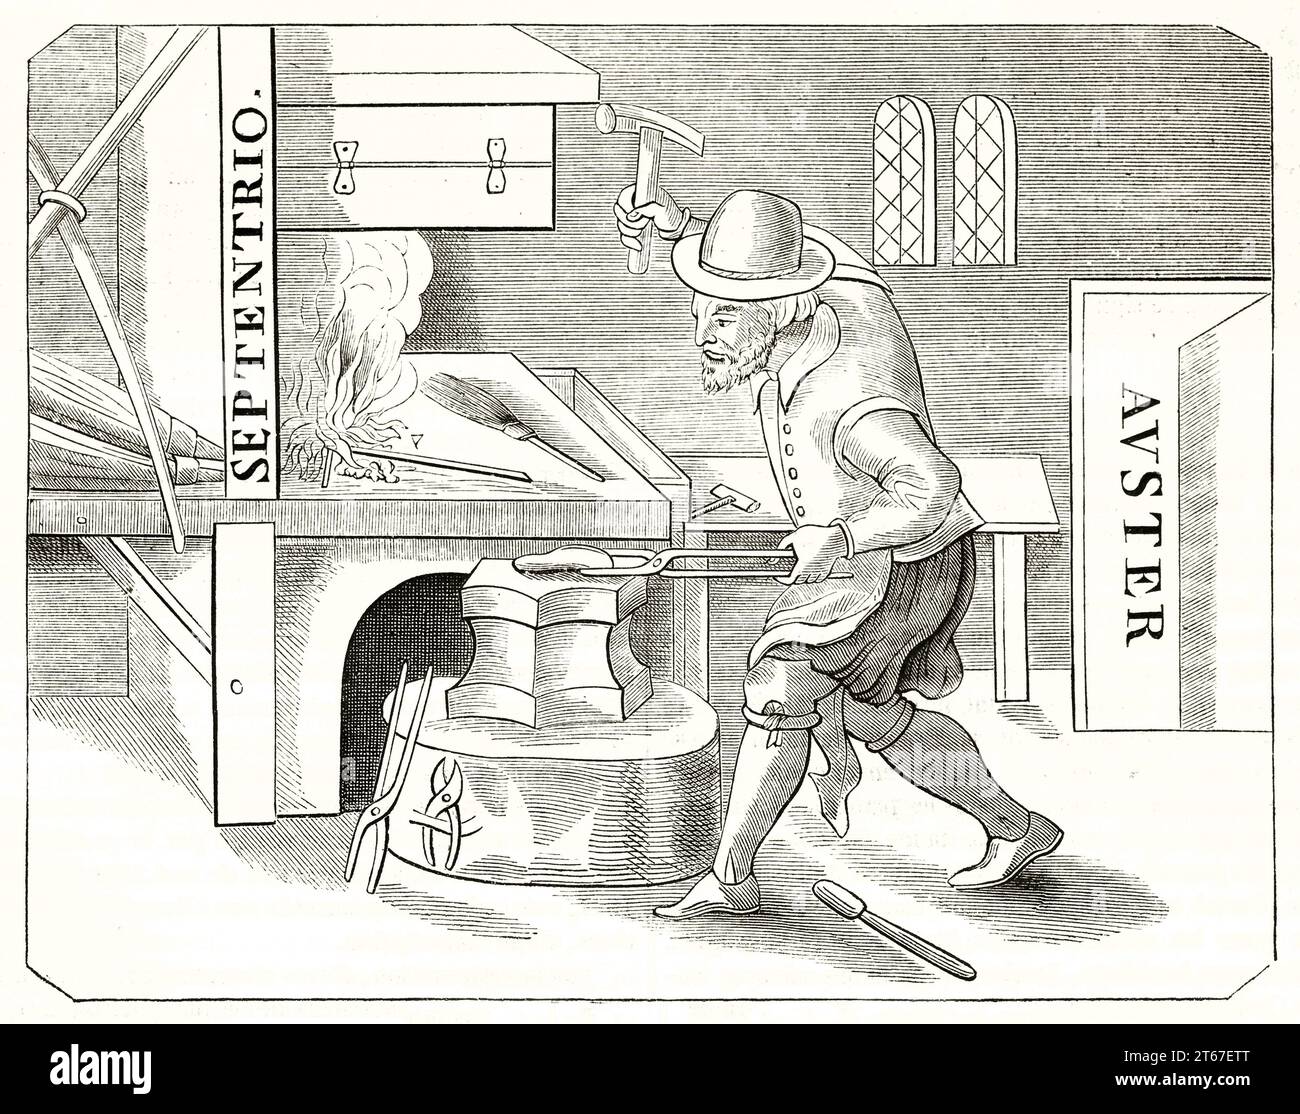 Alte Illustration, die Schmied mit magnetisierendem Druckeisen zeigt. Nach dem Druck aus dem 17. Jahrhundert, Pub. Auf Magasin Pittoresque, Paris, 1851 Stockfoto